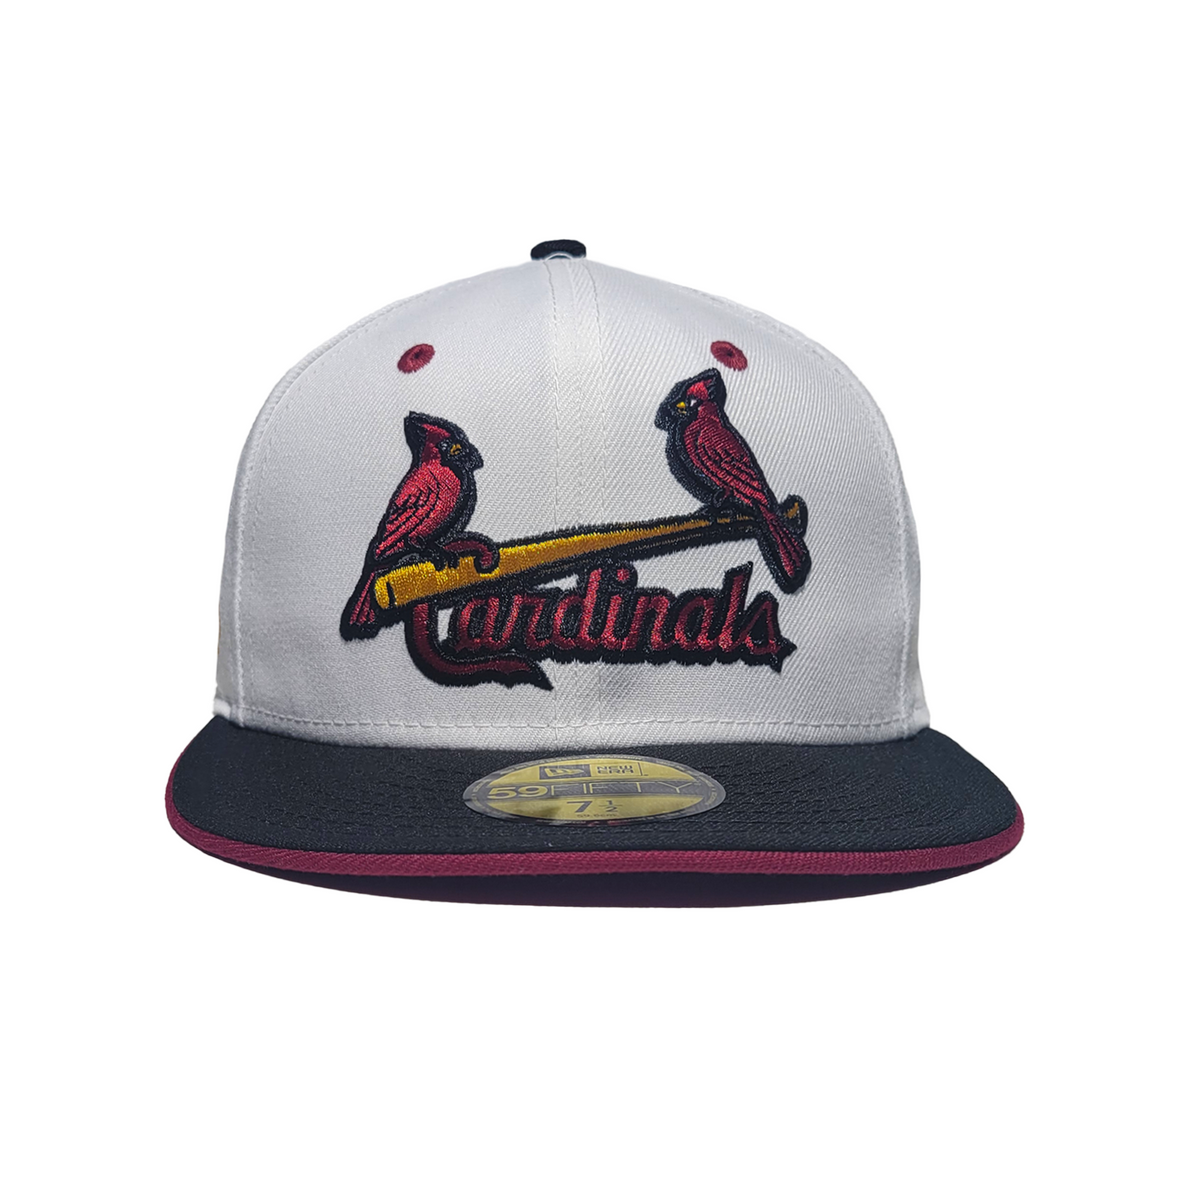 cardinals hat png